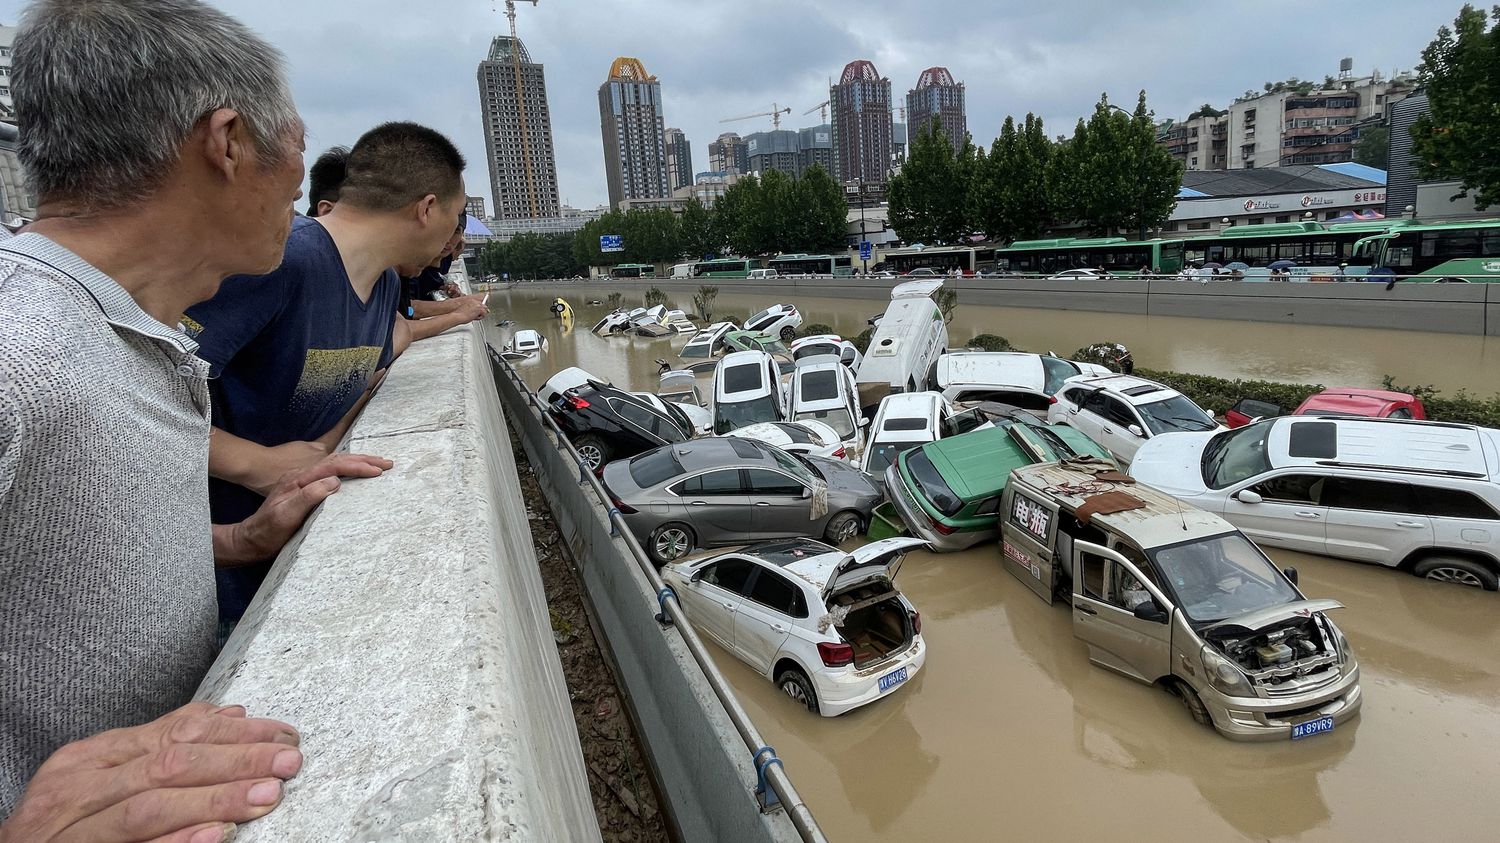 Menace de rupture du barrage de Luoyang : Il faut réévaluer les normes de sécurité des barrages 'à l'aune du changement climatique', analyse un chercheur